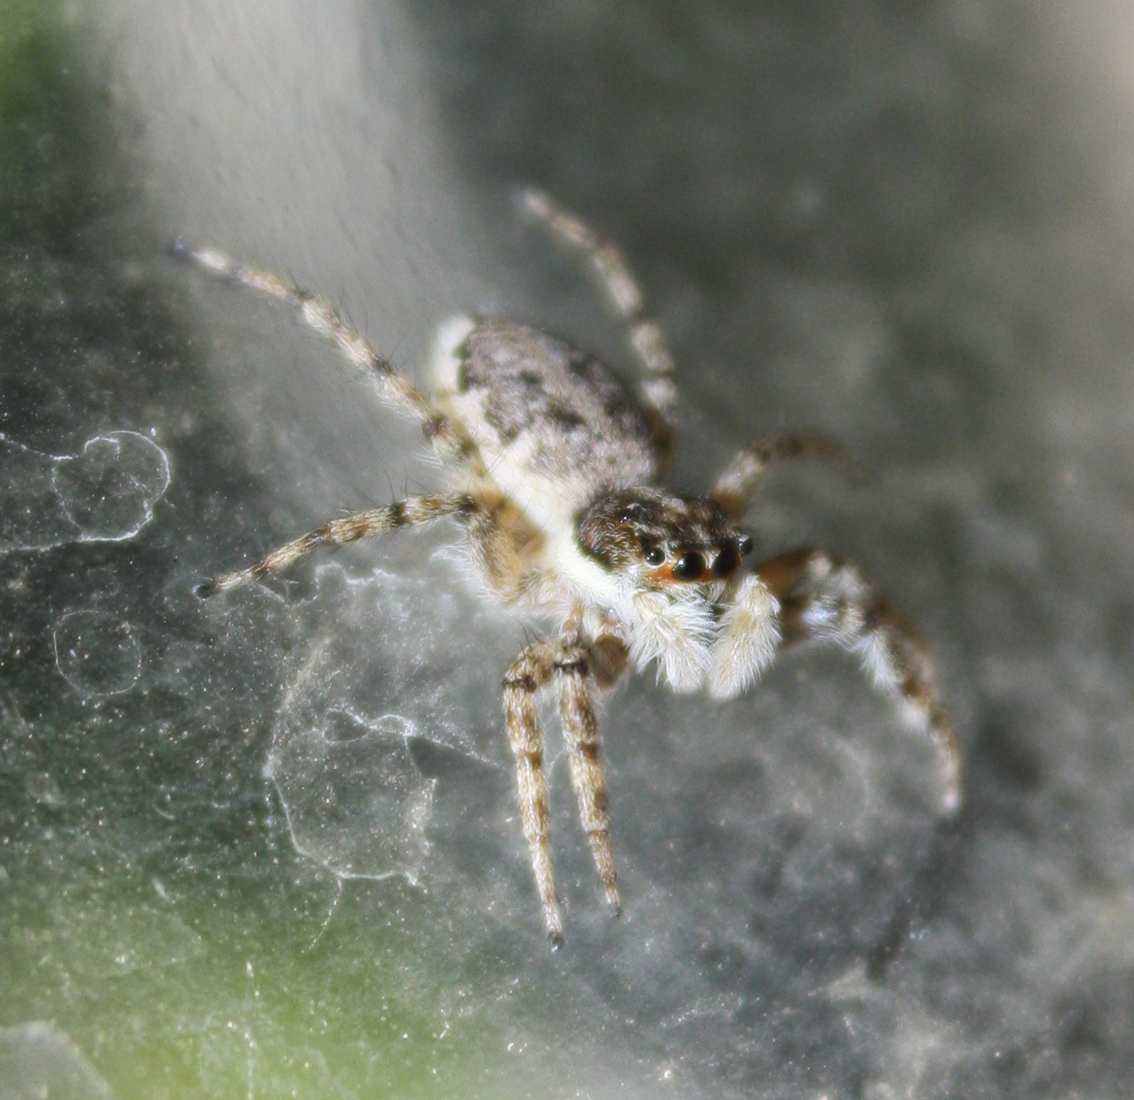 Cabrita / Jumping spider